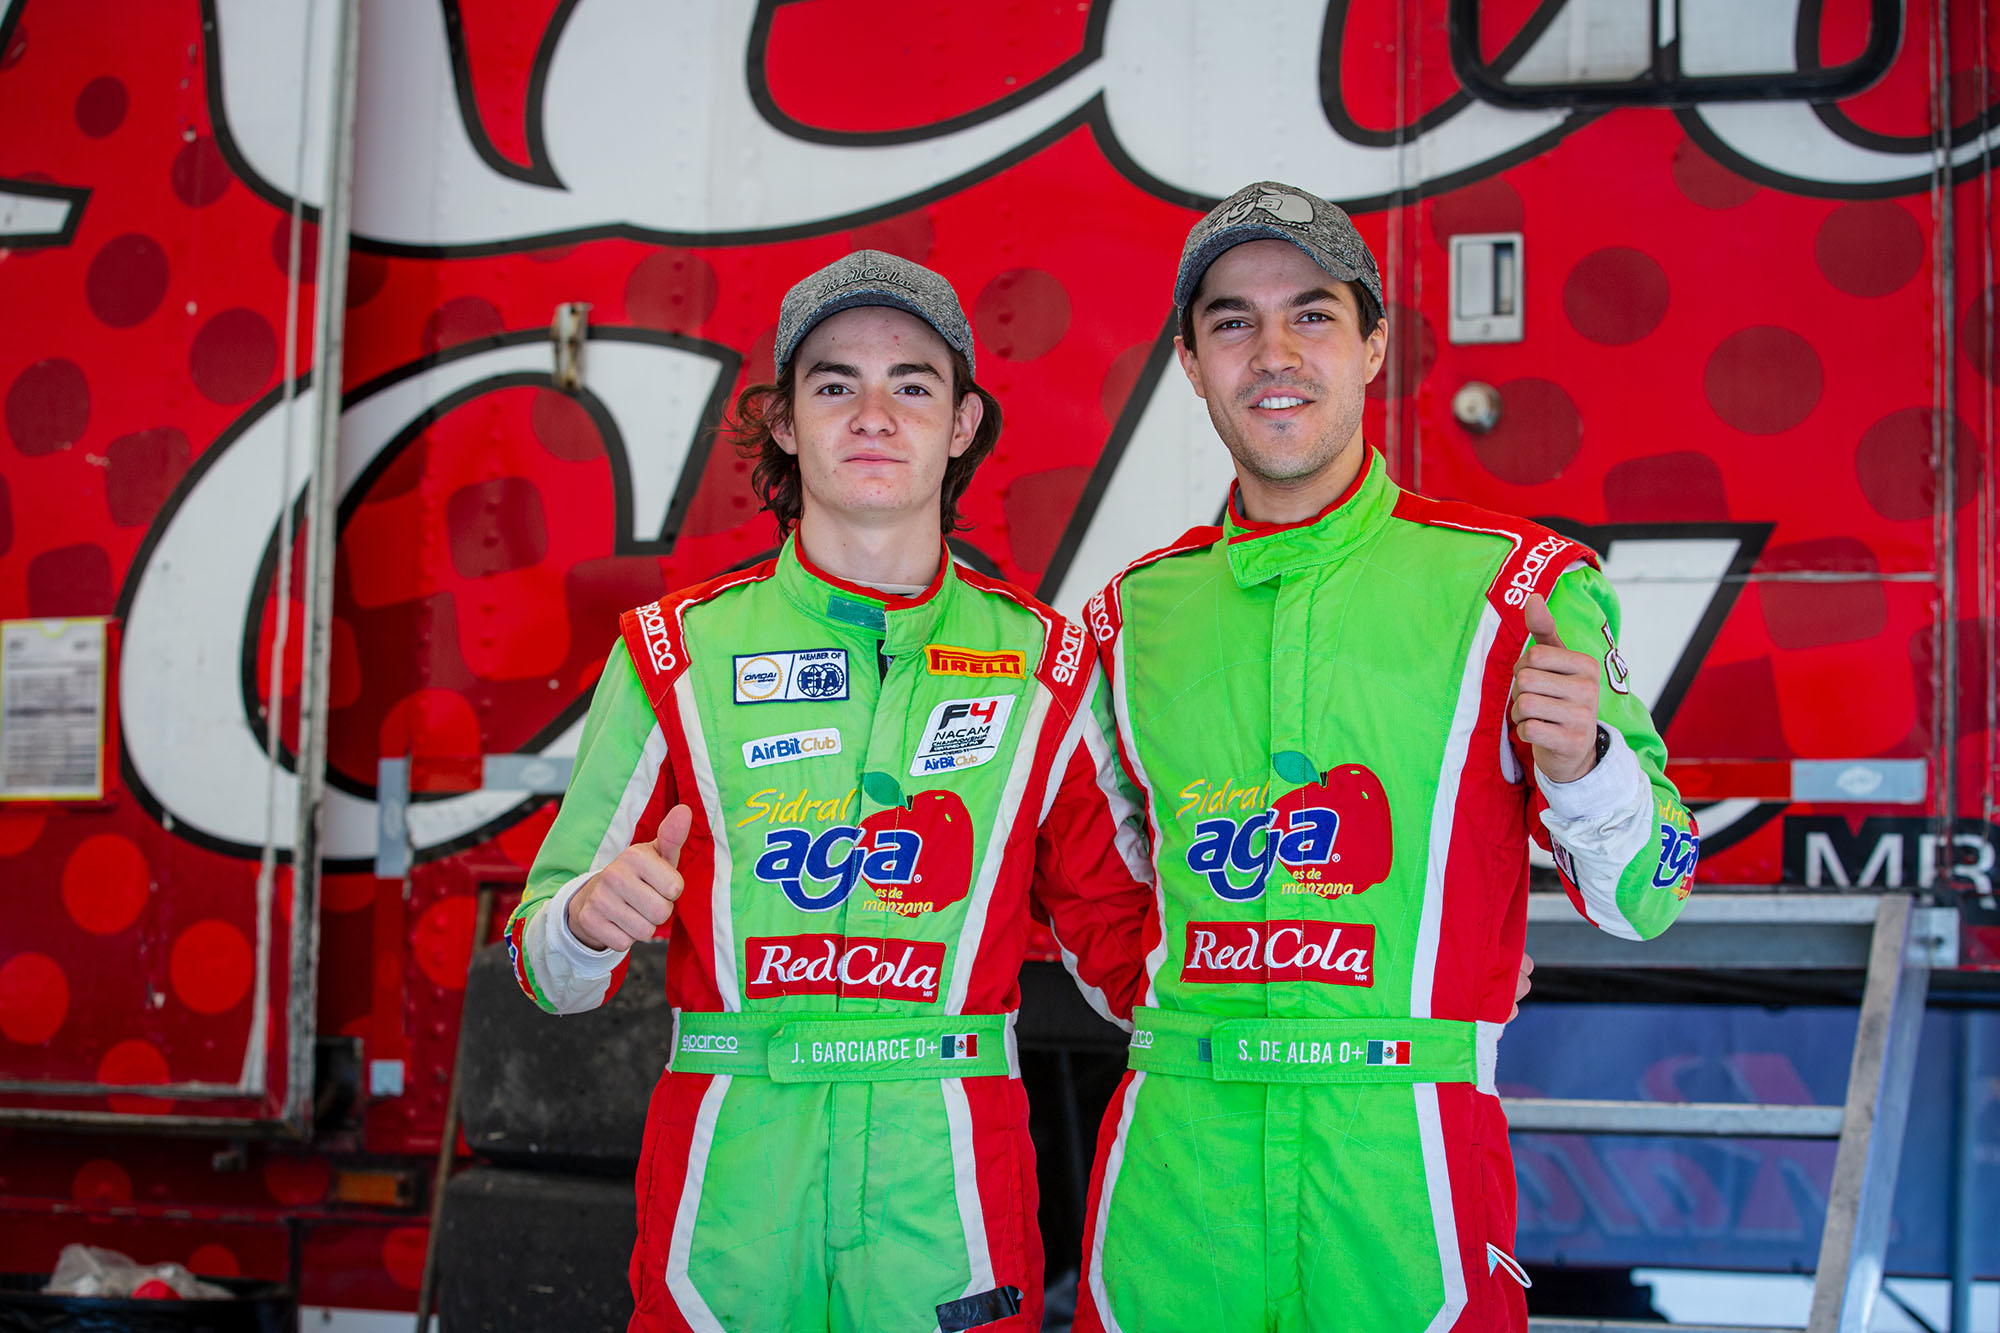 El Sidral Aga Racing Team, inicia en casa la defensa del título de la Gran Turismo México